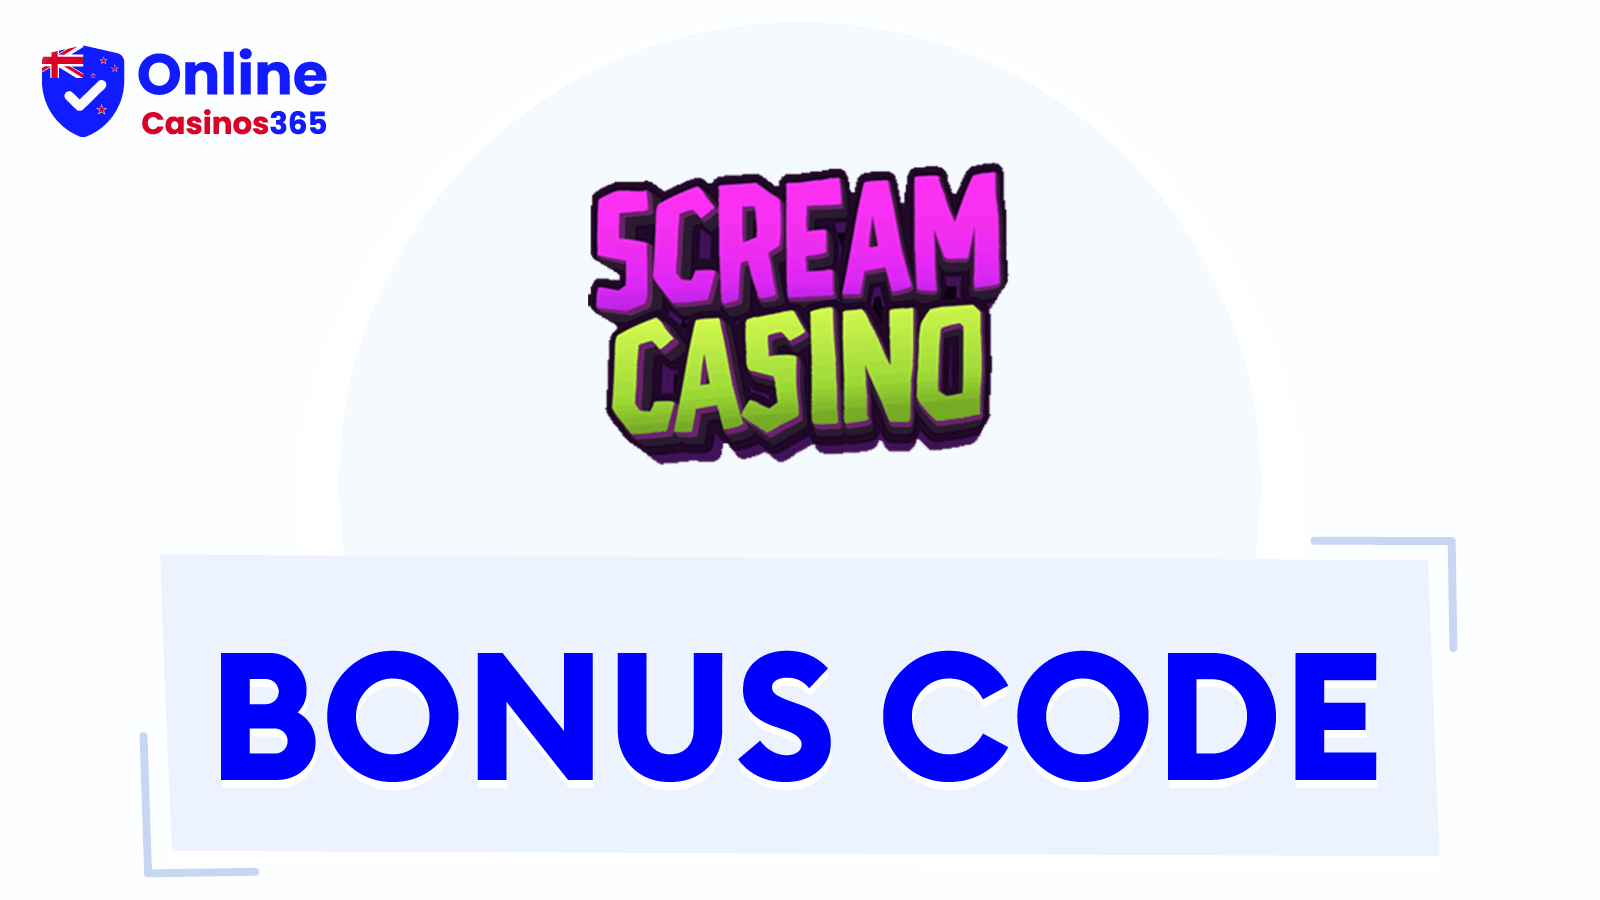 Scream Casino Bonus Codes